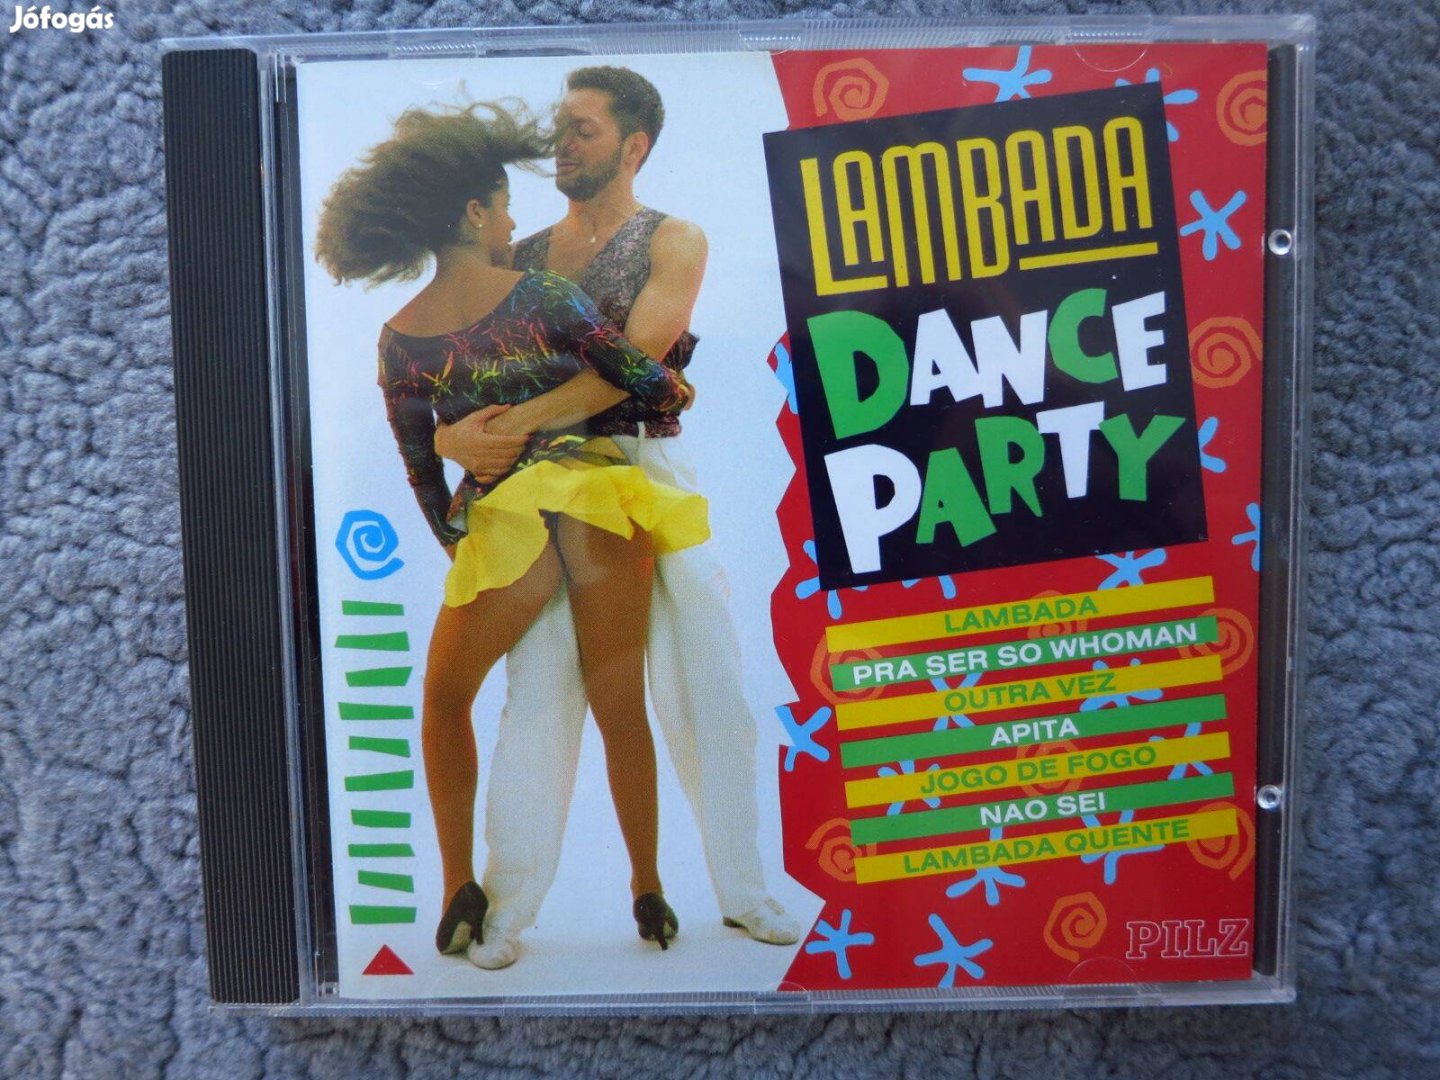 Pilz - Lambada - Dance Party - CD lemez